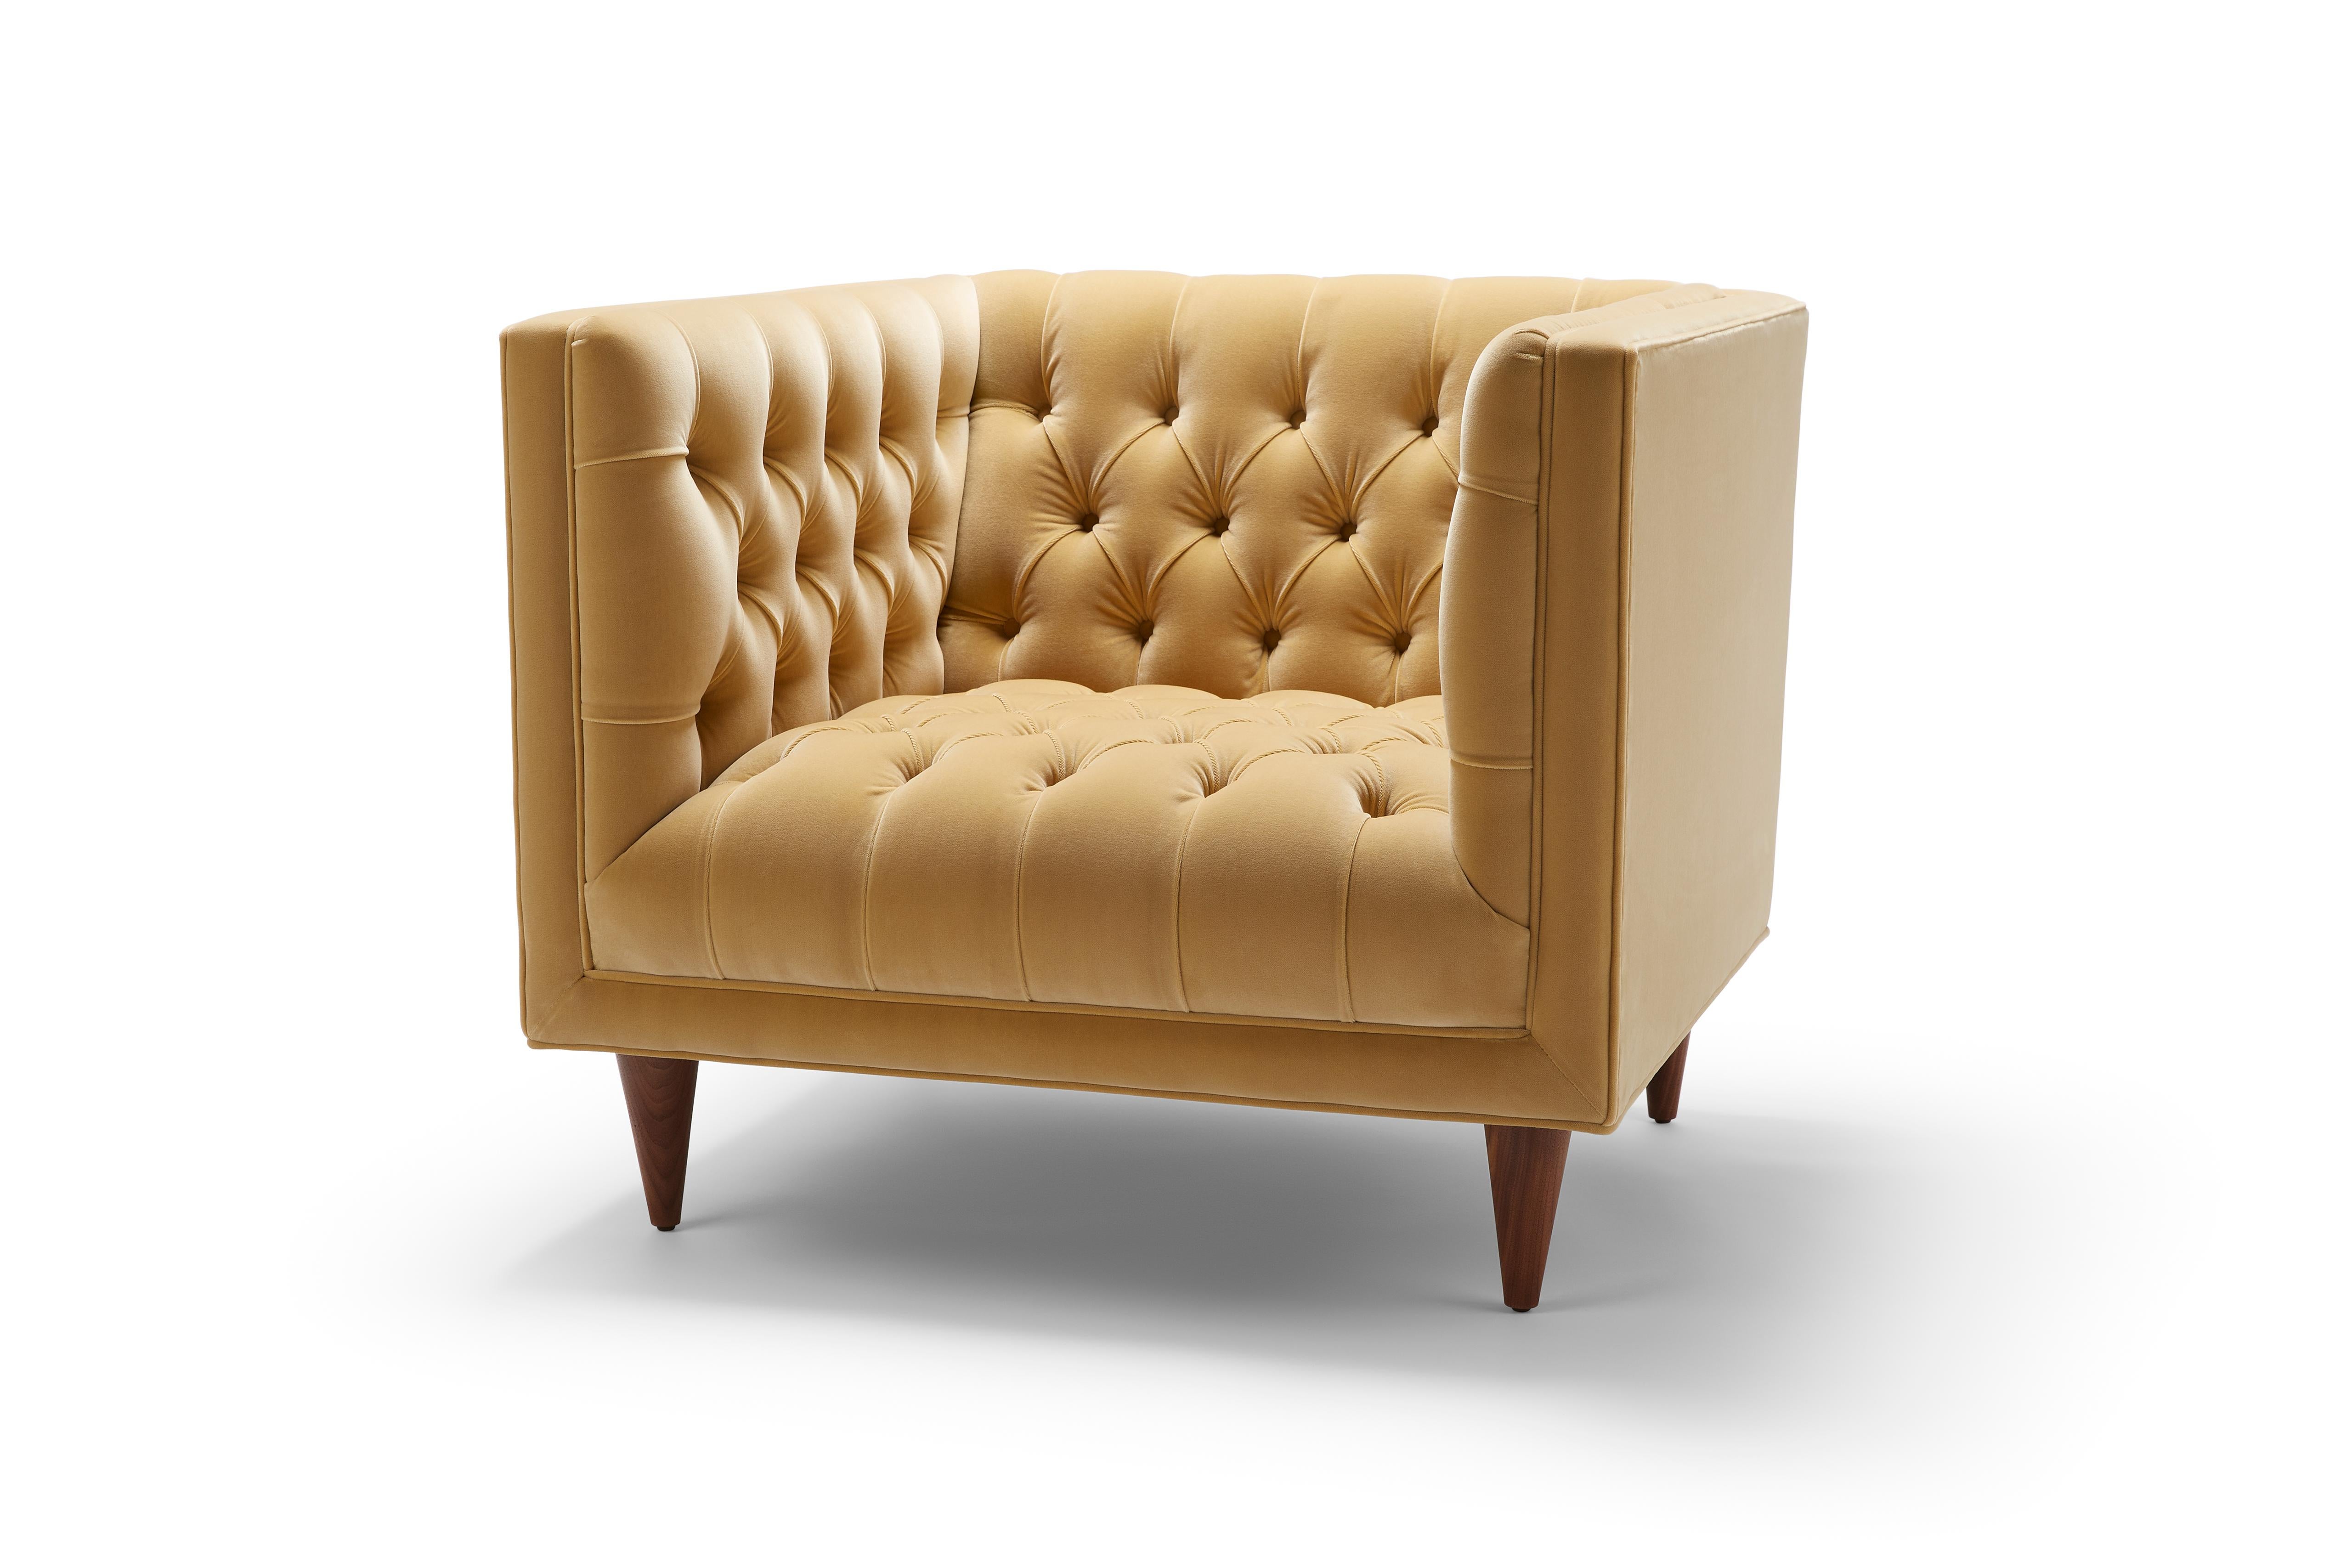 Der Tux Chair ist unsere moderne Interpretation des klassischen Chesterfield. Die tiefe Knopfleiste und die maßgeschneiderten Details machen dieses Stück zu einem persönlichen Favoriten. Hier abgebildet mit einem Bezug aus Designers Guild Varese